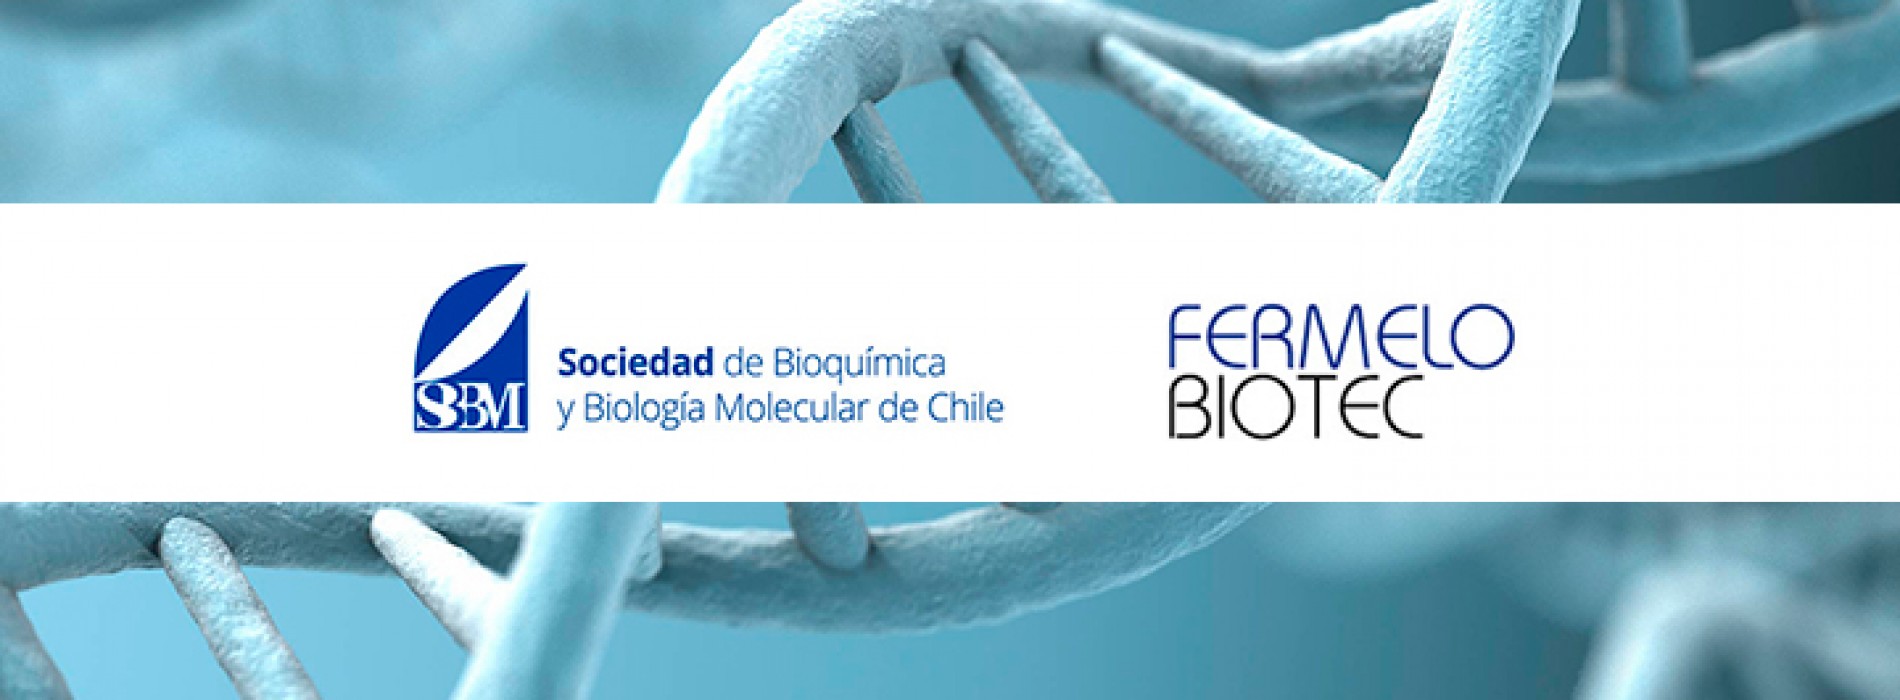 “SBBMCH y Fermelo Biotec: Una historia de cooperación, amistad y ciencia”